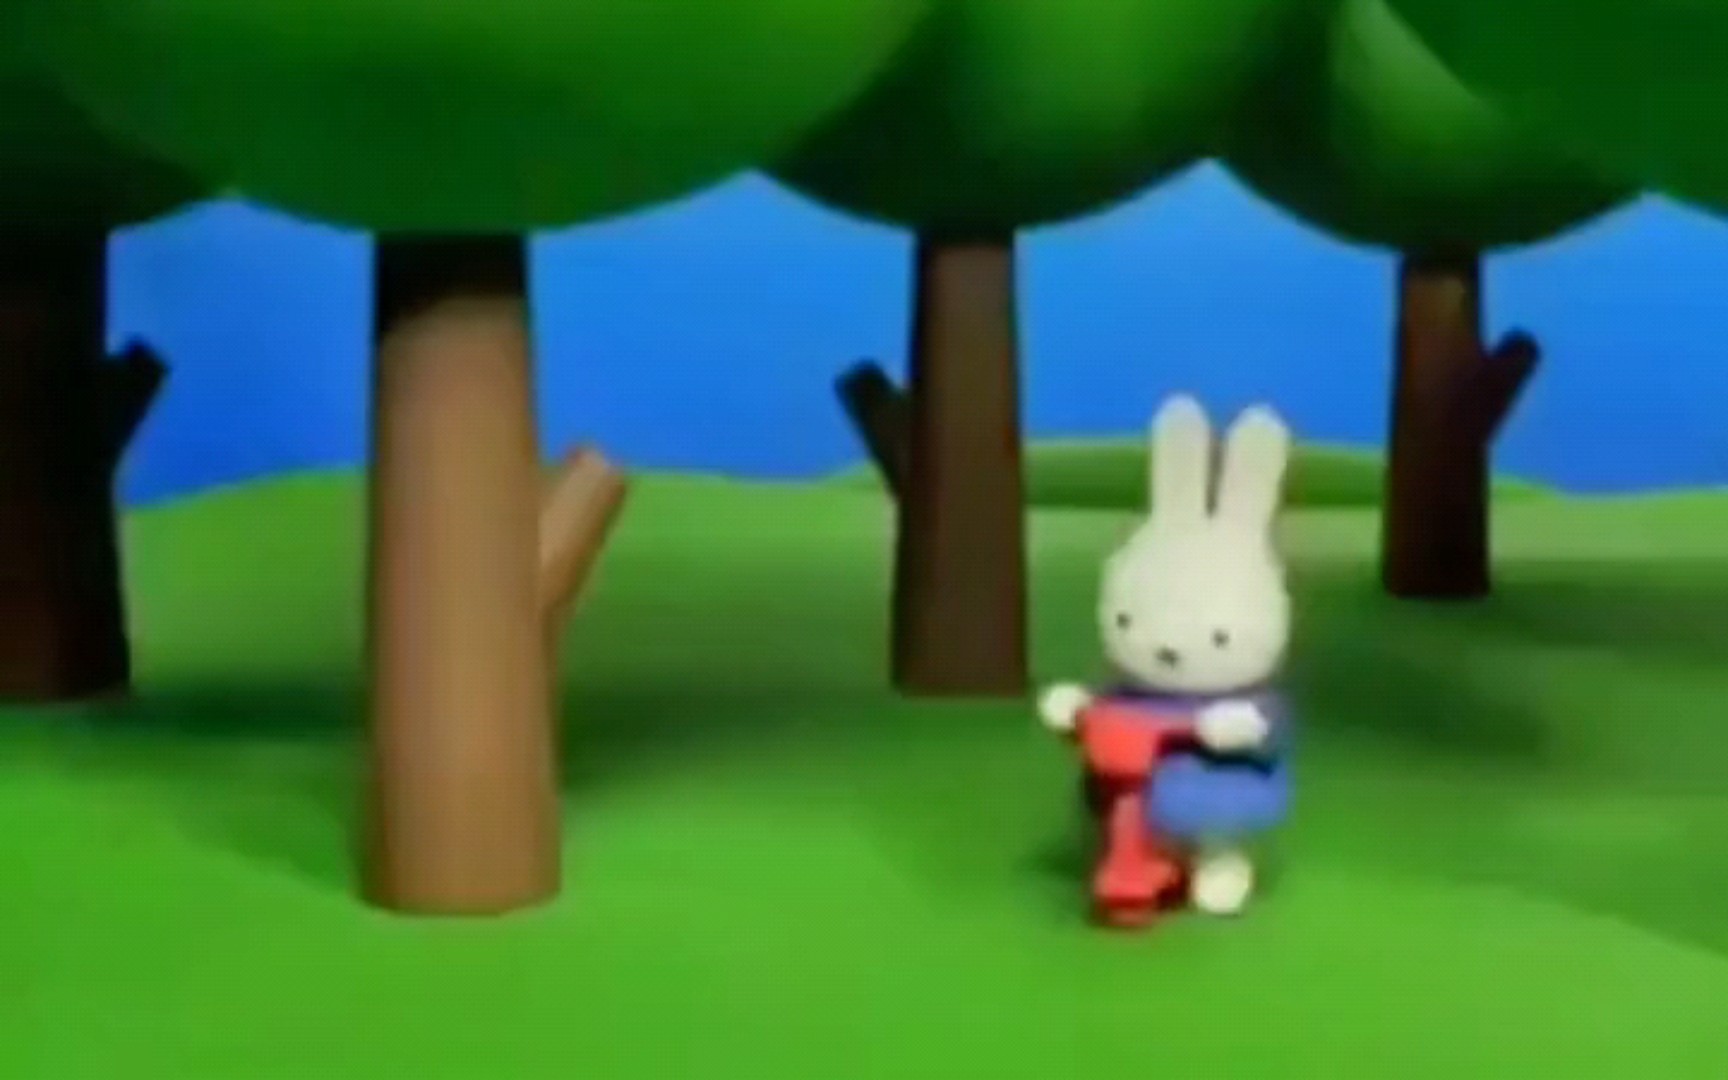 只是一个小兔子捉迷藏的视频哦